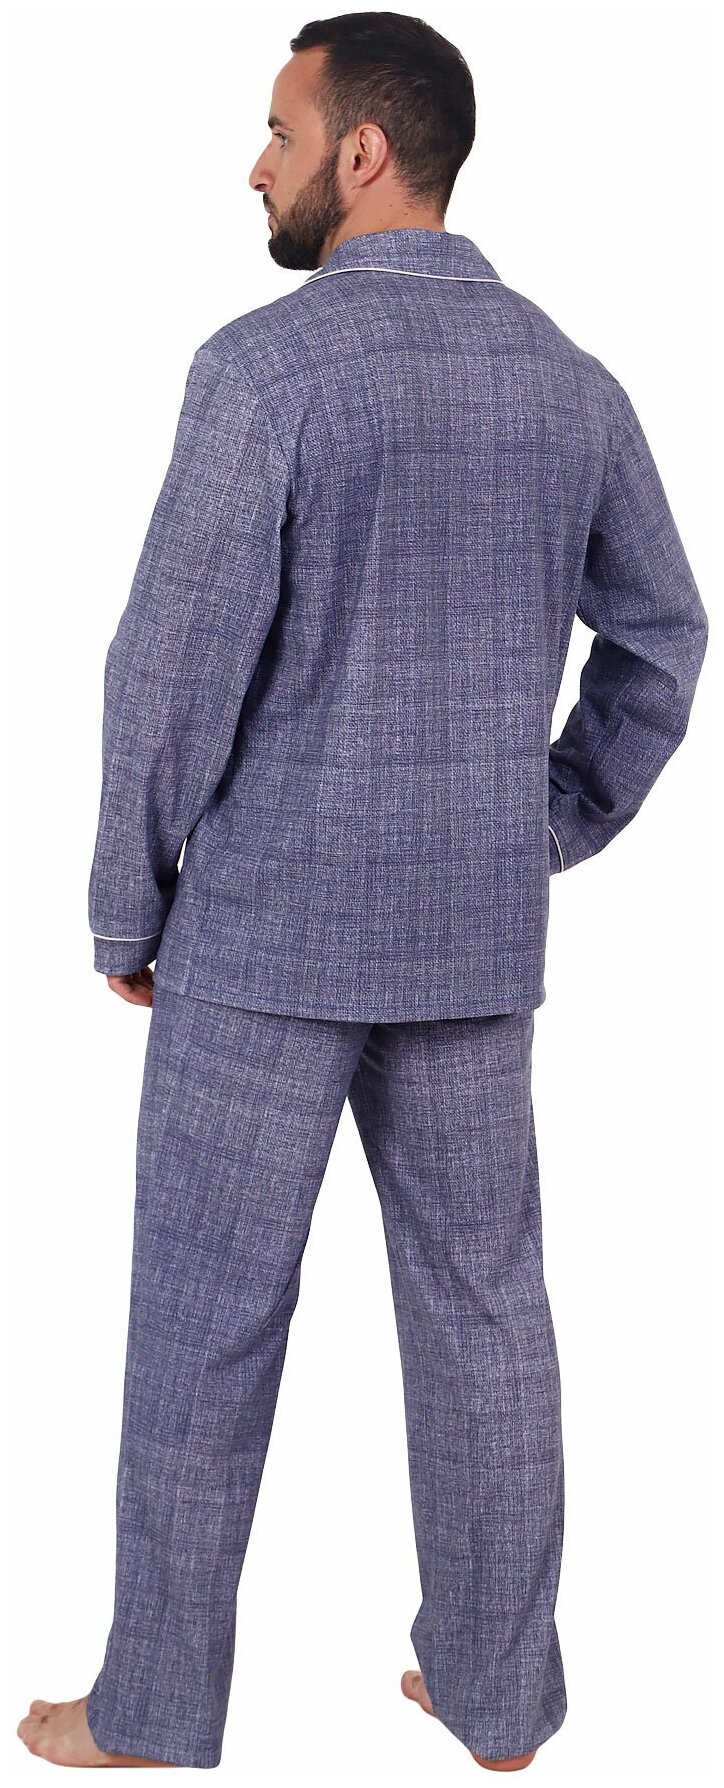 Мужская пижама Вояж Синий размер 50 Кулирка Оптима трикотаж рубашка на пуговицах с отложным воротником брюки с карманами - фотография № 2